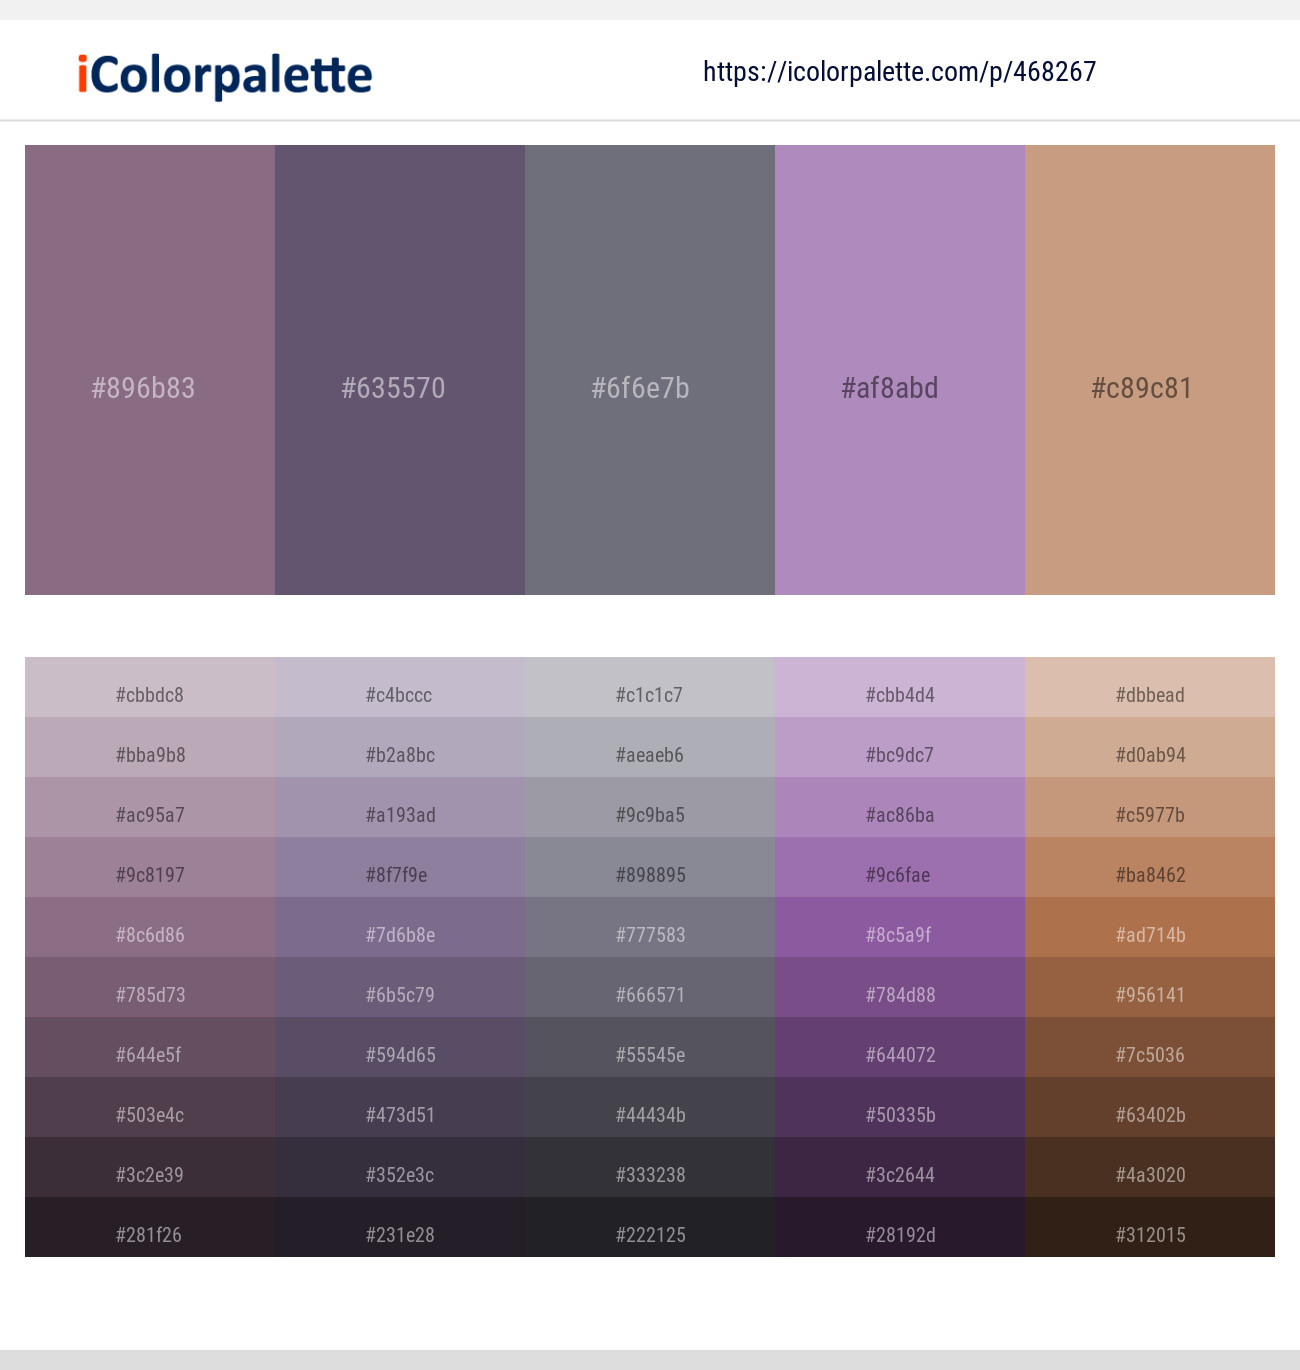 British Grey Mauve color #7d7081 hex color - Violet color - Cool color  7d7081 